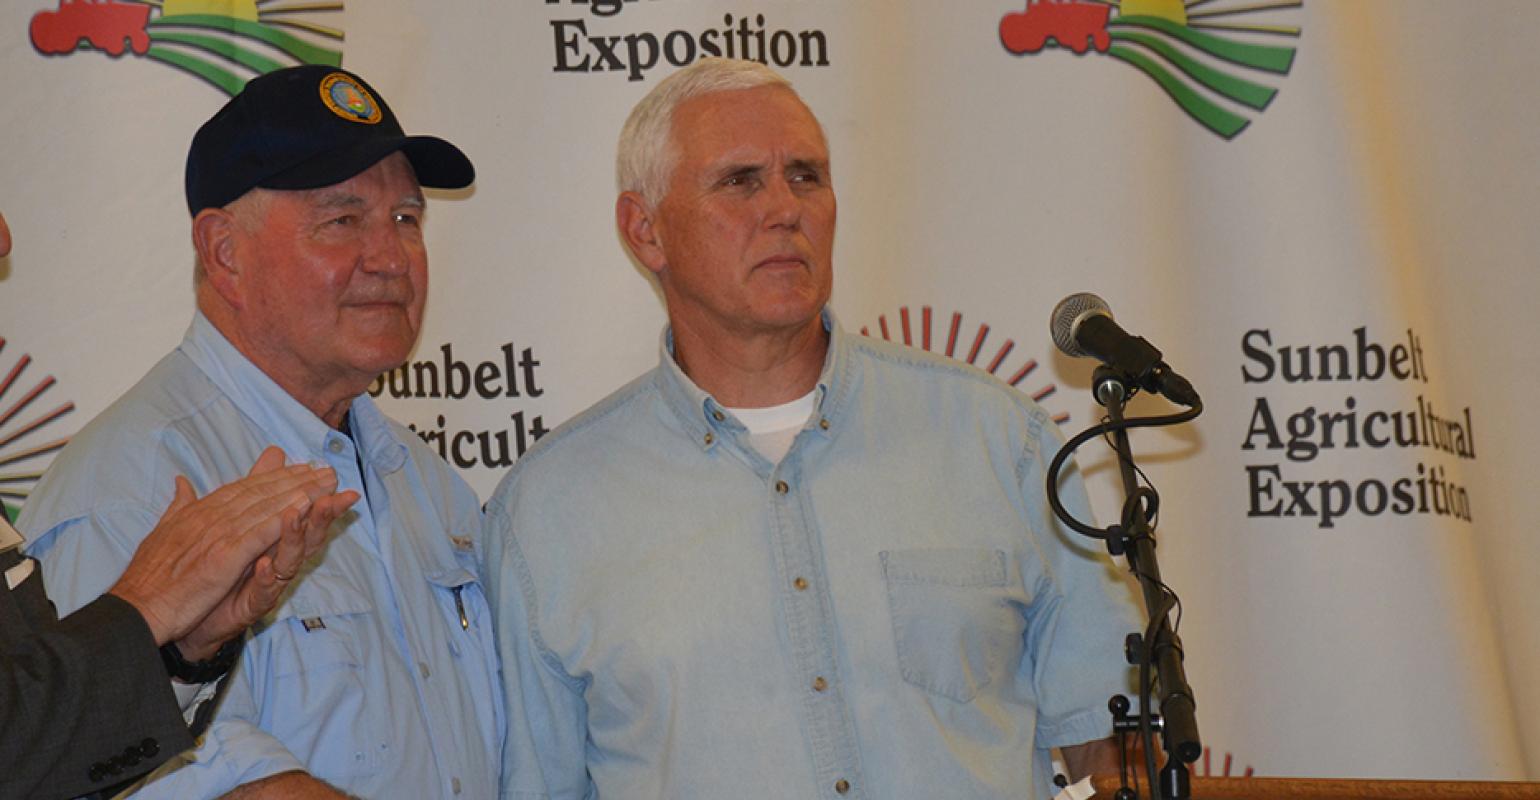 Vice President Mike Pence Speaks at Sunbelt Ag Expo